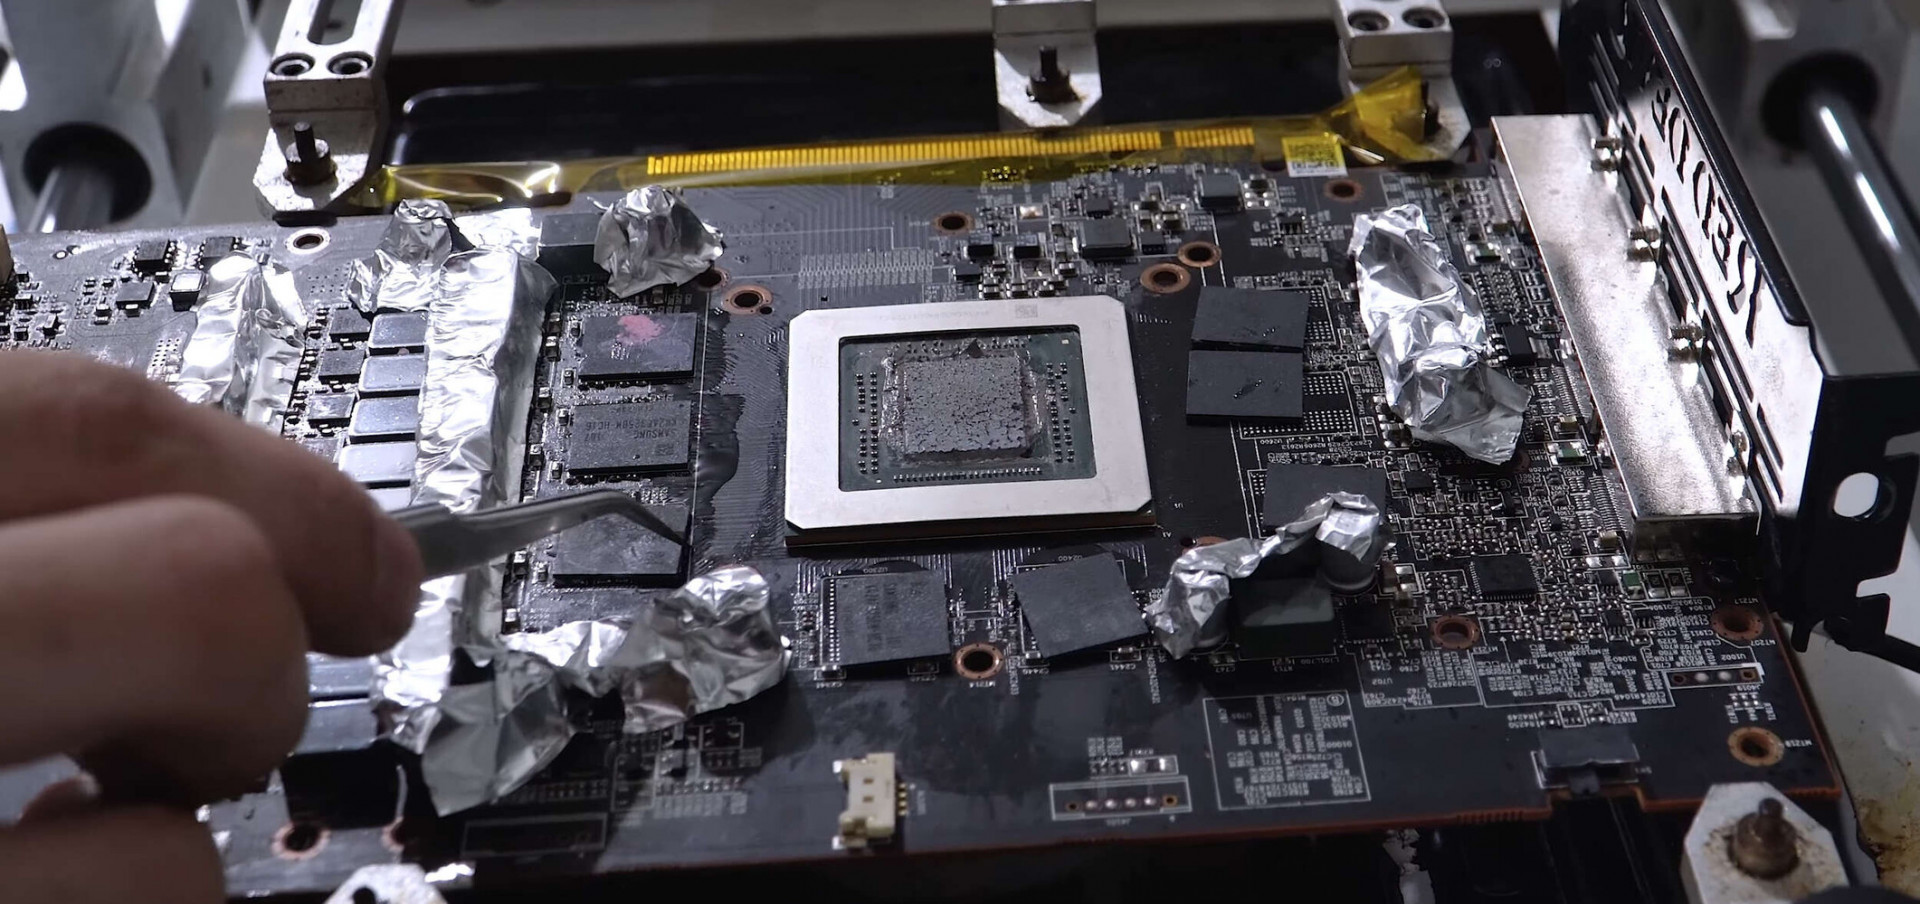 Добавив AMD Radeon RX 5600 XT видеопамяти, можно получить прирост производительности до 29%